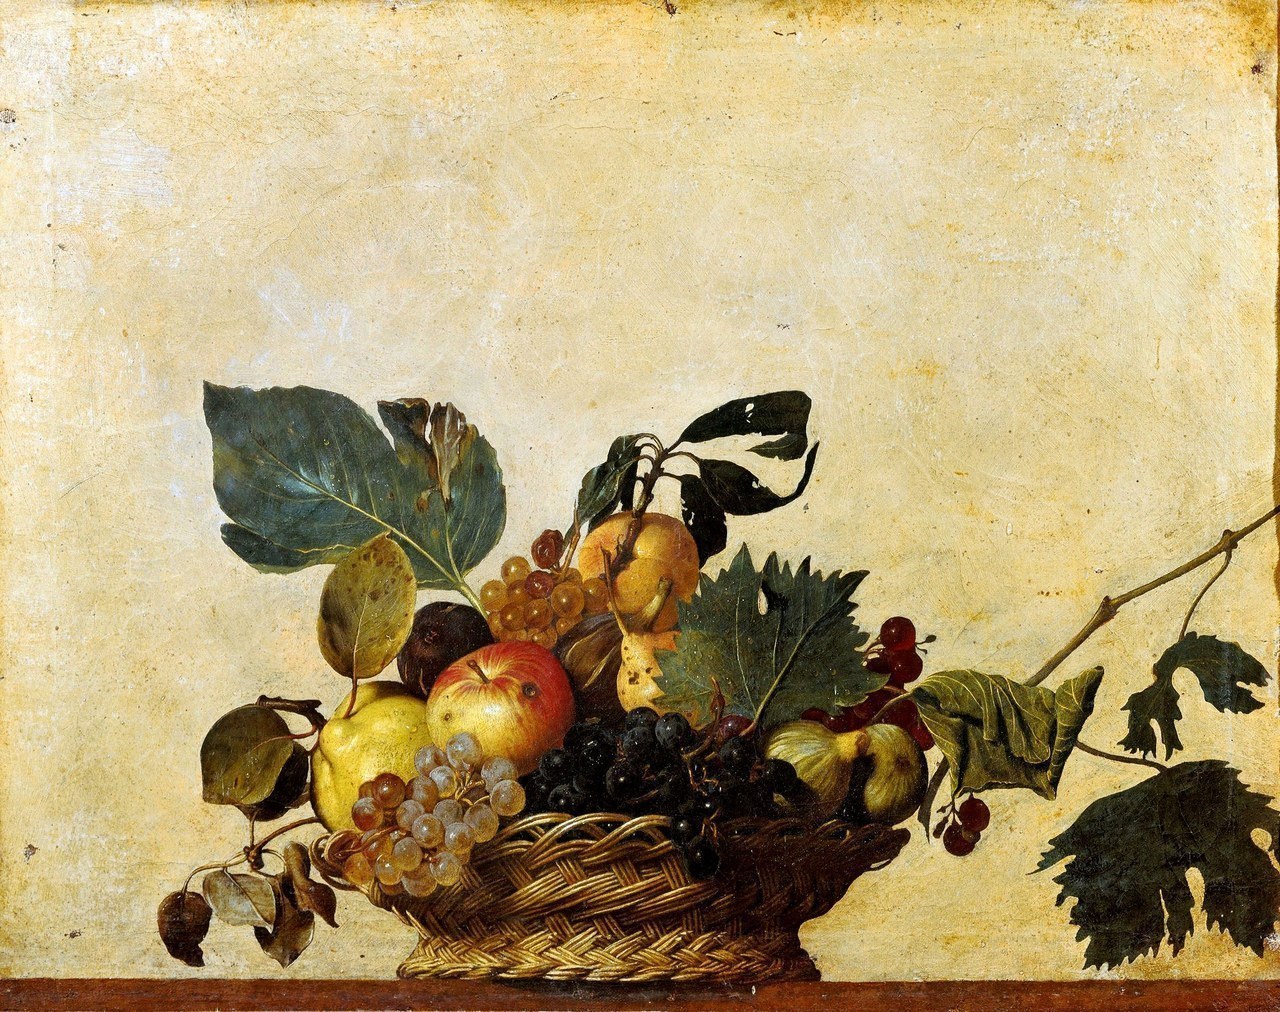   Caravaggio, Canestra di frutta, olio su tela, 1599 ca.